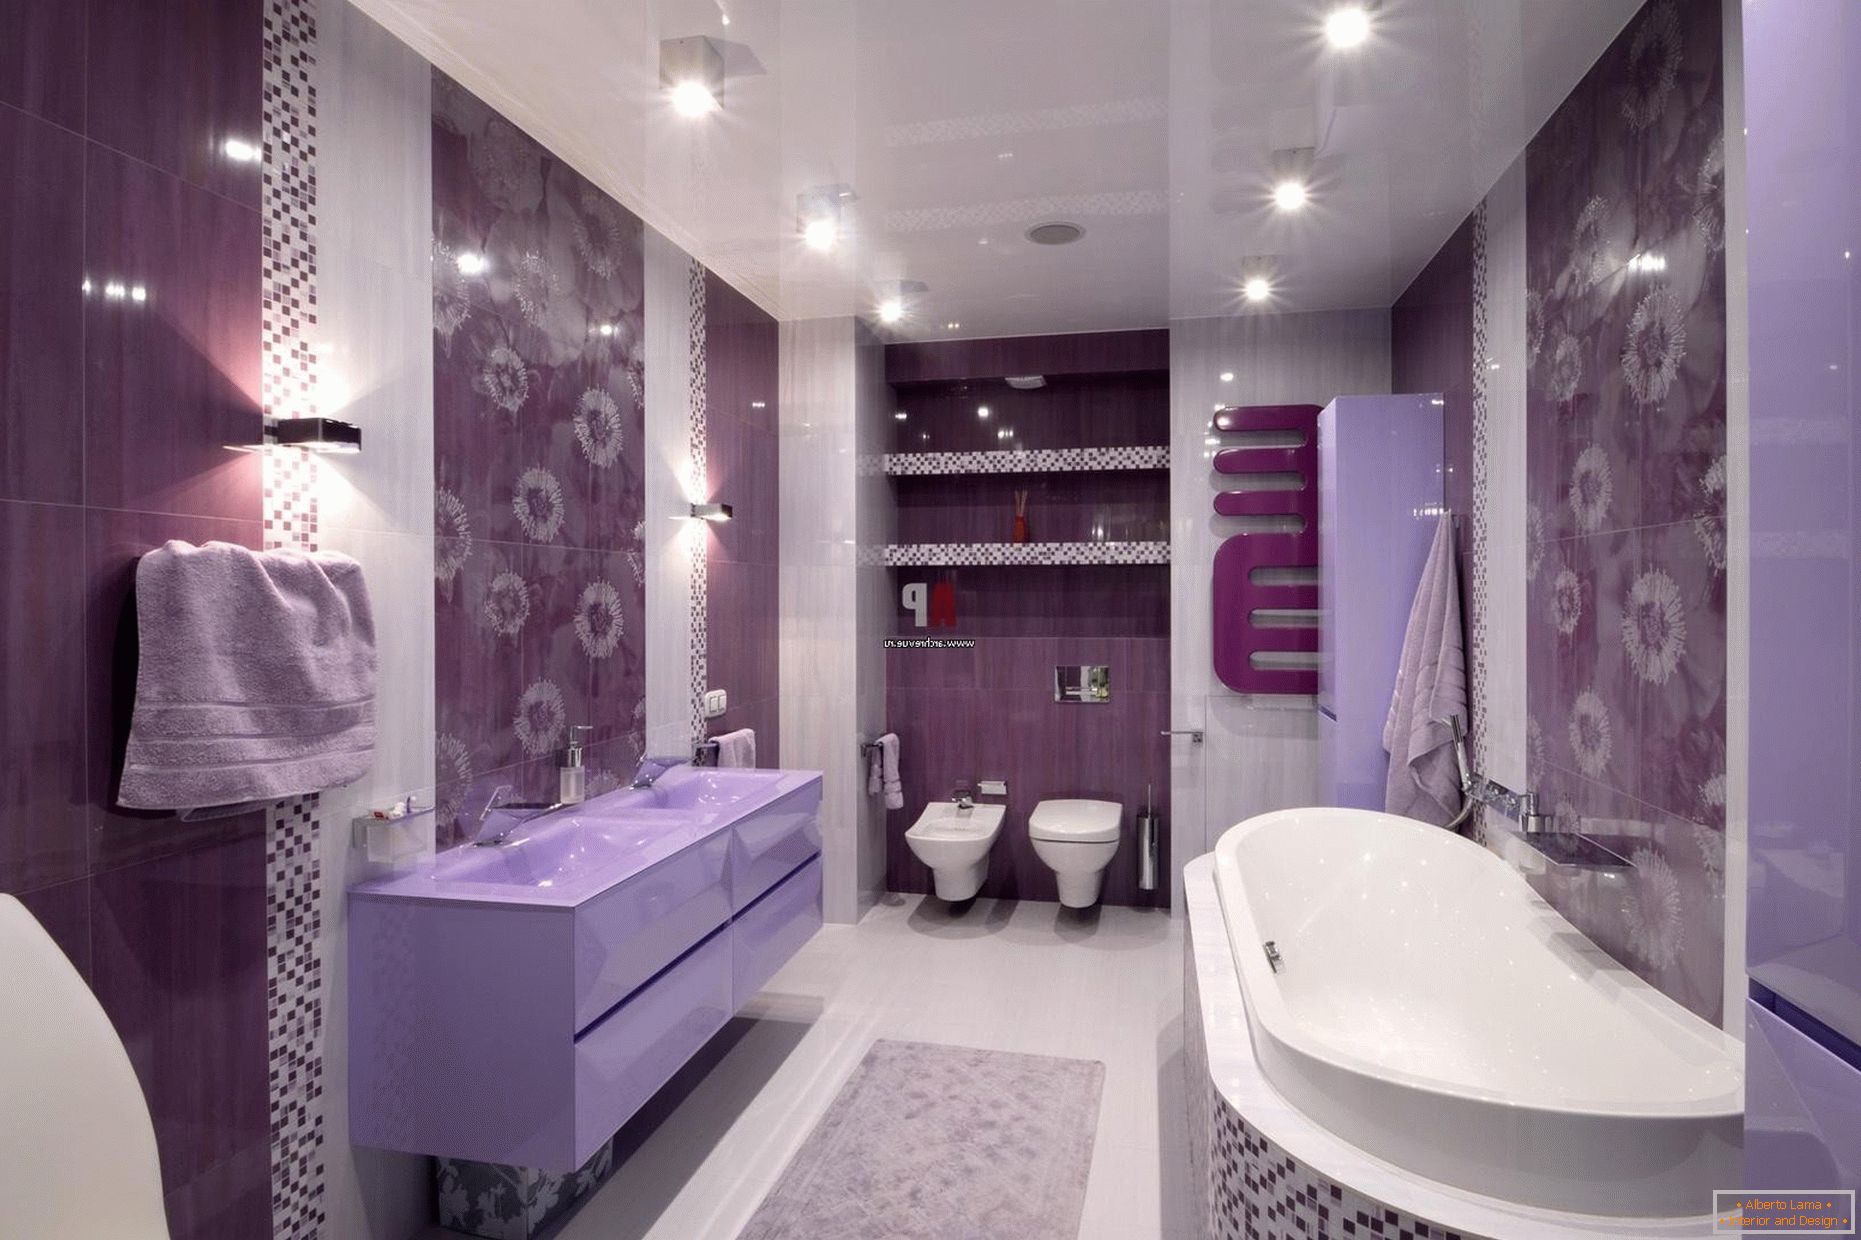 Design luxuoso do banheiro em flores lilás